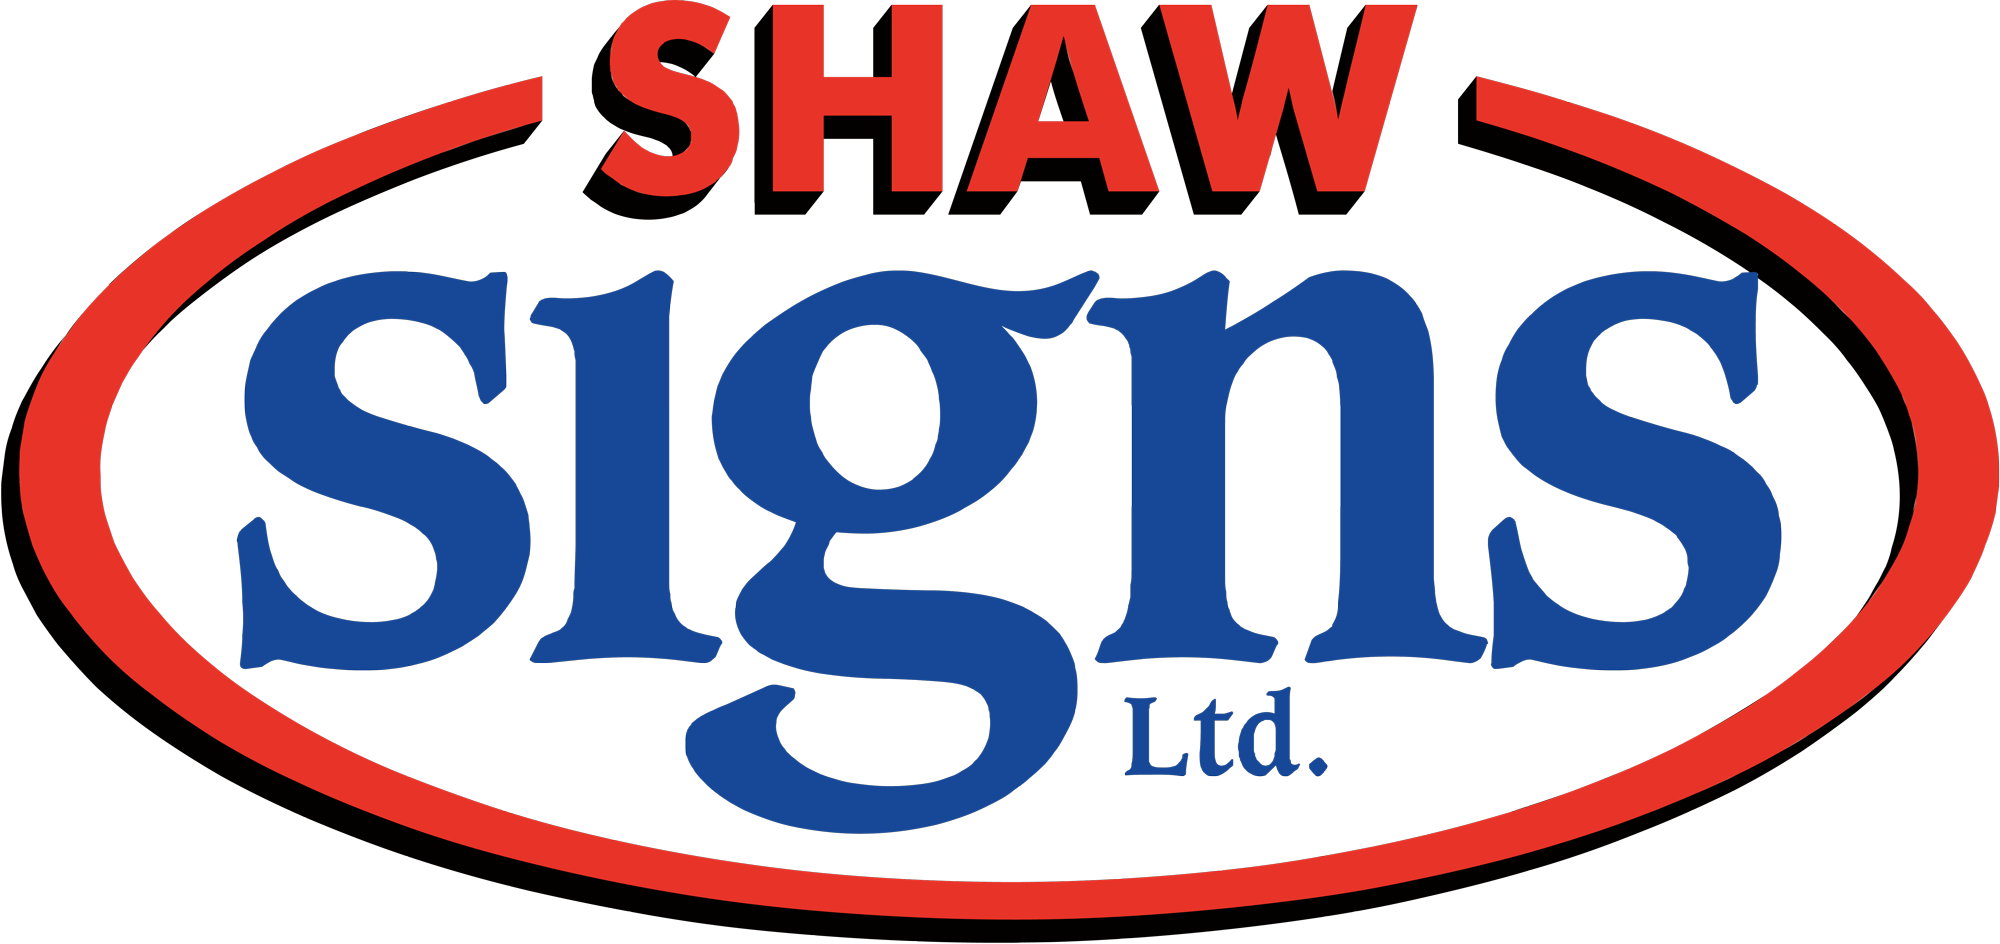 Shaw Signs Ltd